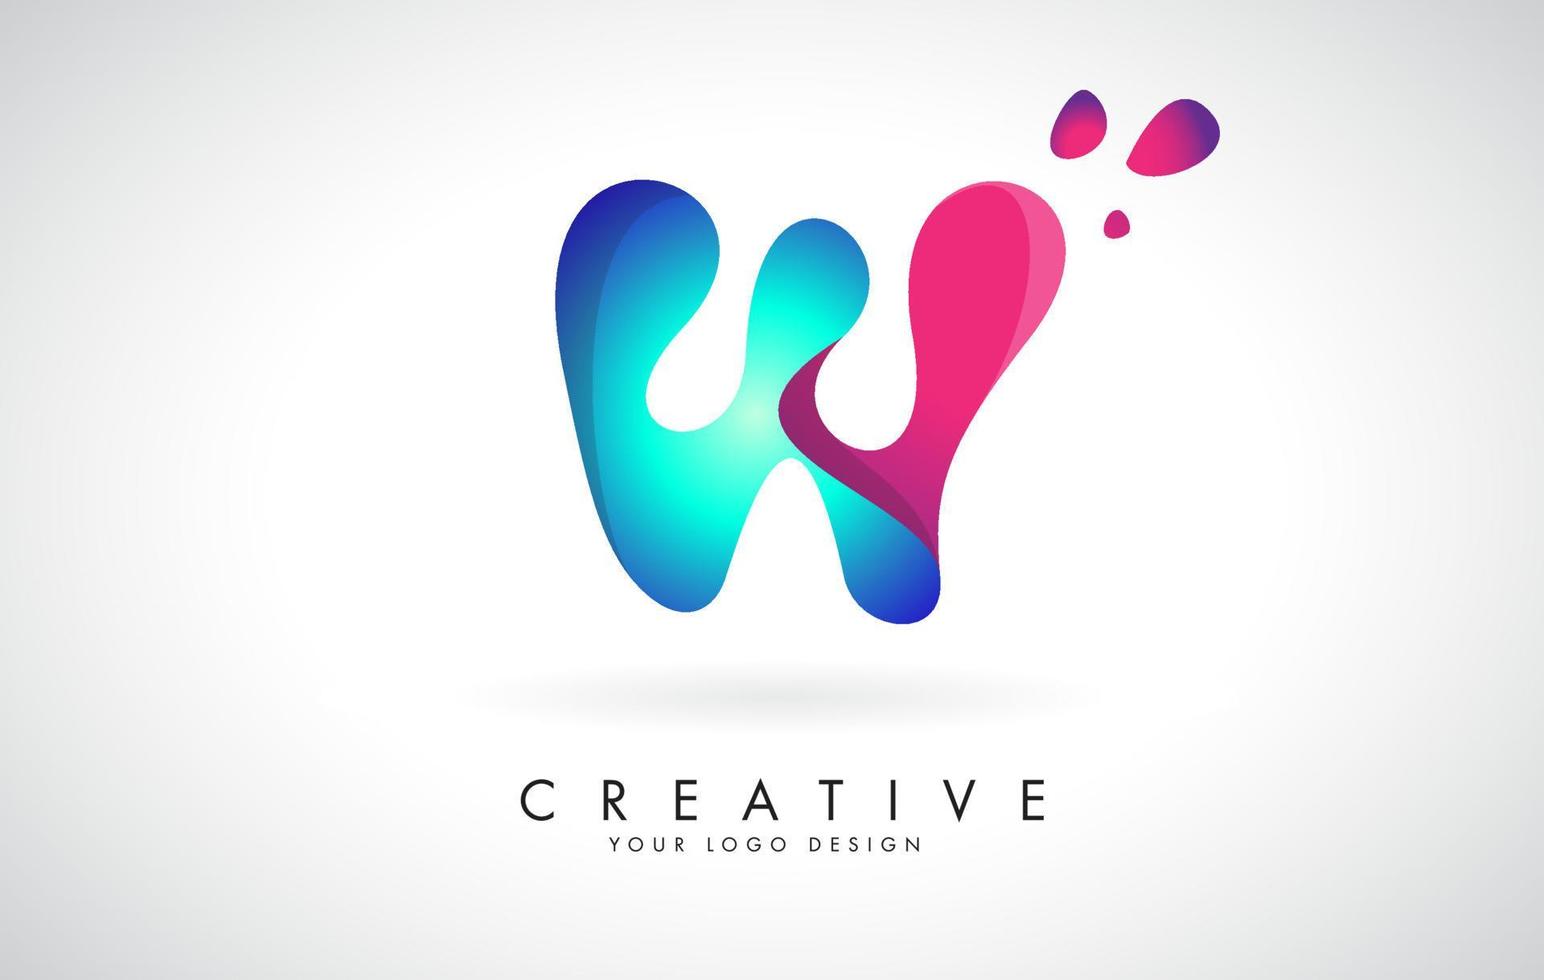 design de logotipo w de letra criativa azul e rosa com pontos. entretenimento corporativo amigável, mídia, tecnologia, design de vetor de negócios digitais com gotas.